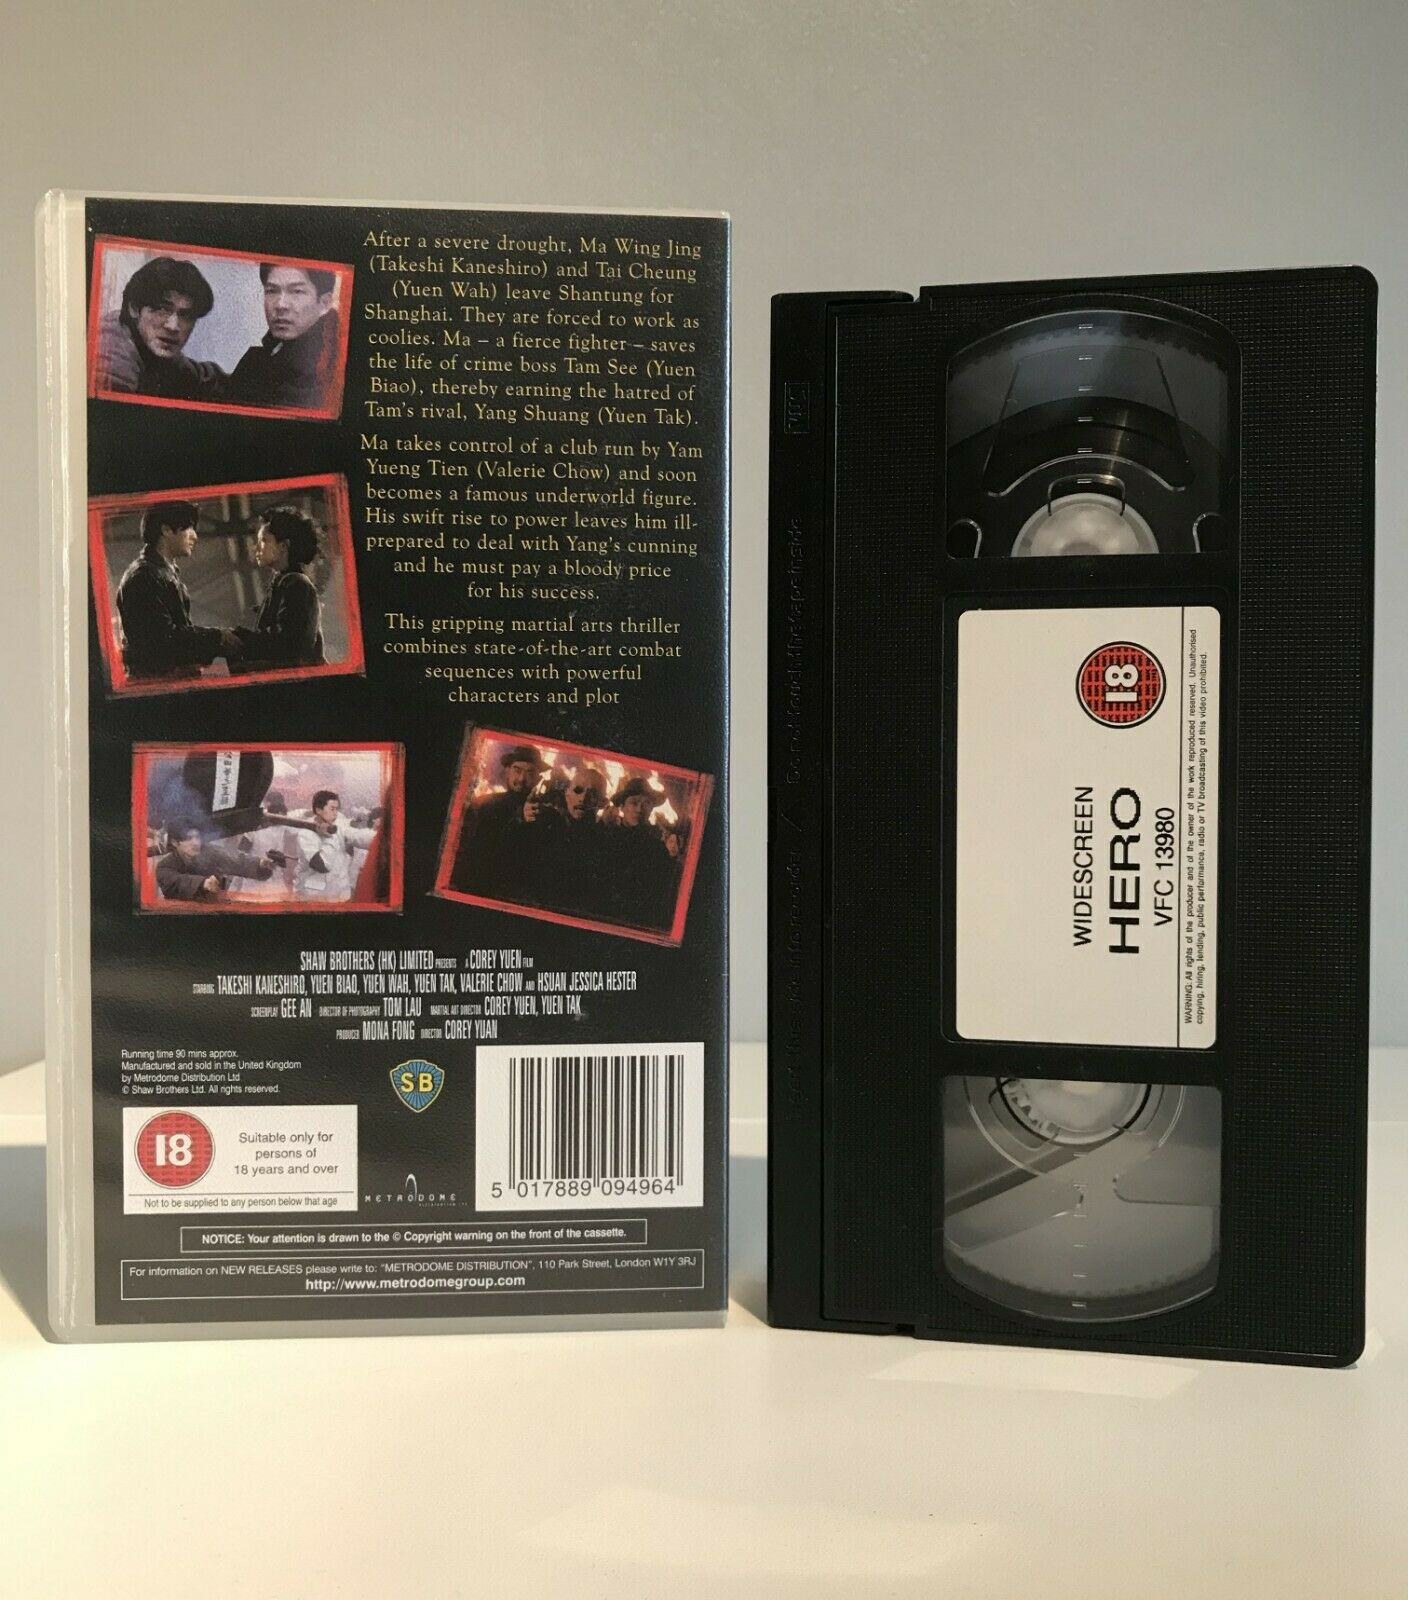 Hero (1997): Widescreen Edition - Hong Kong Martial Arts Film - Yuen Biao - VHS-